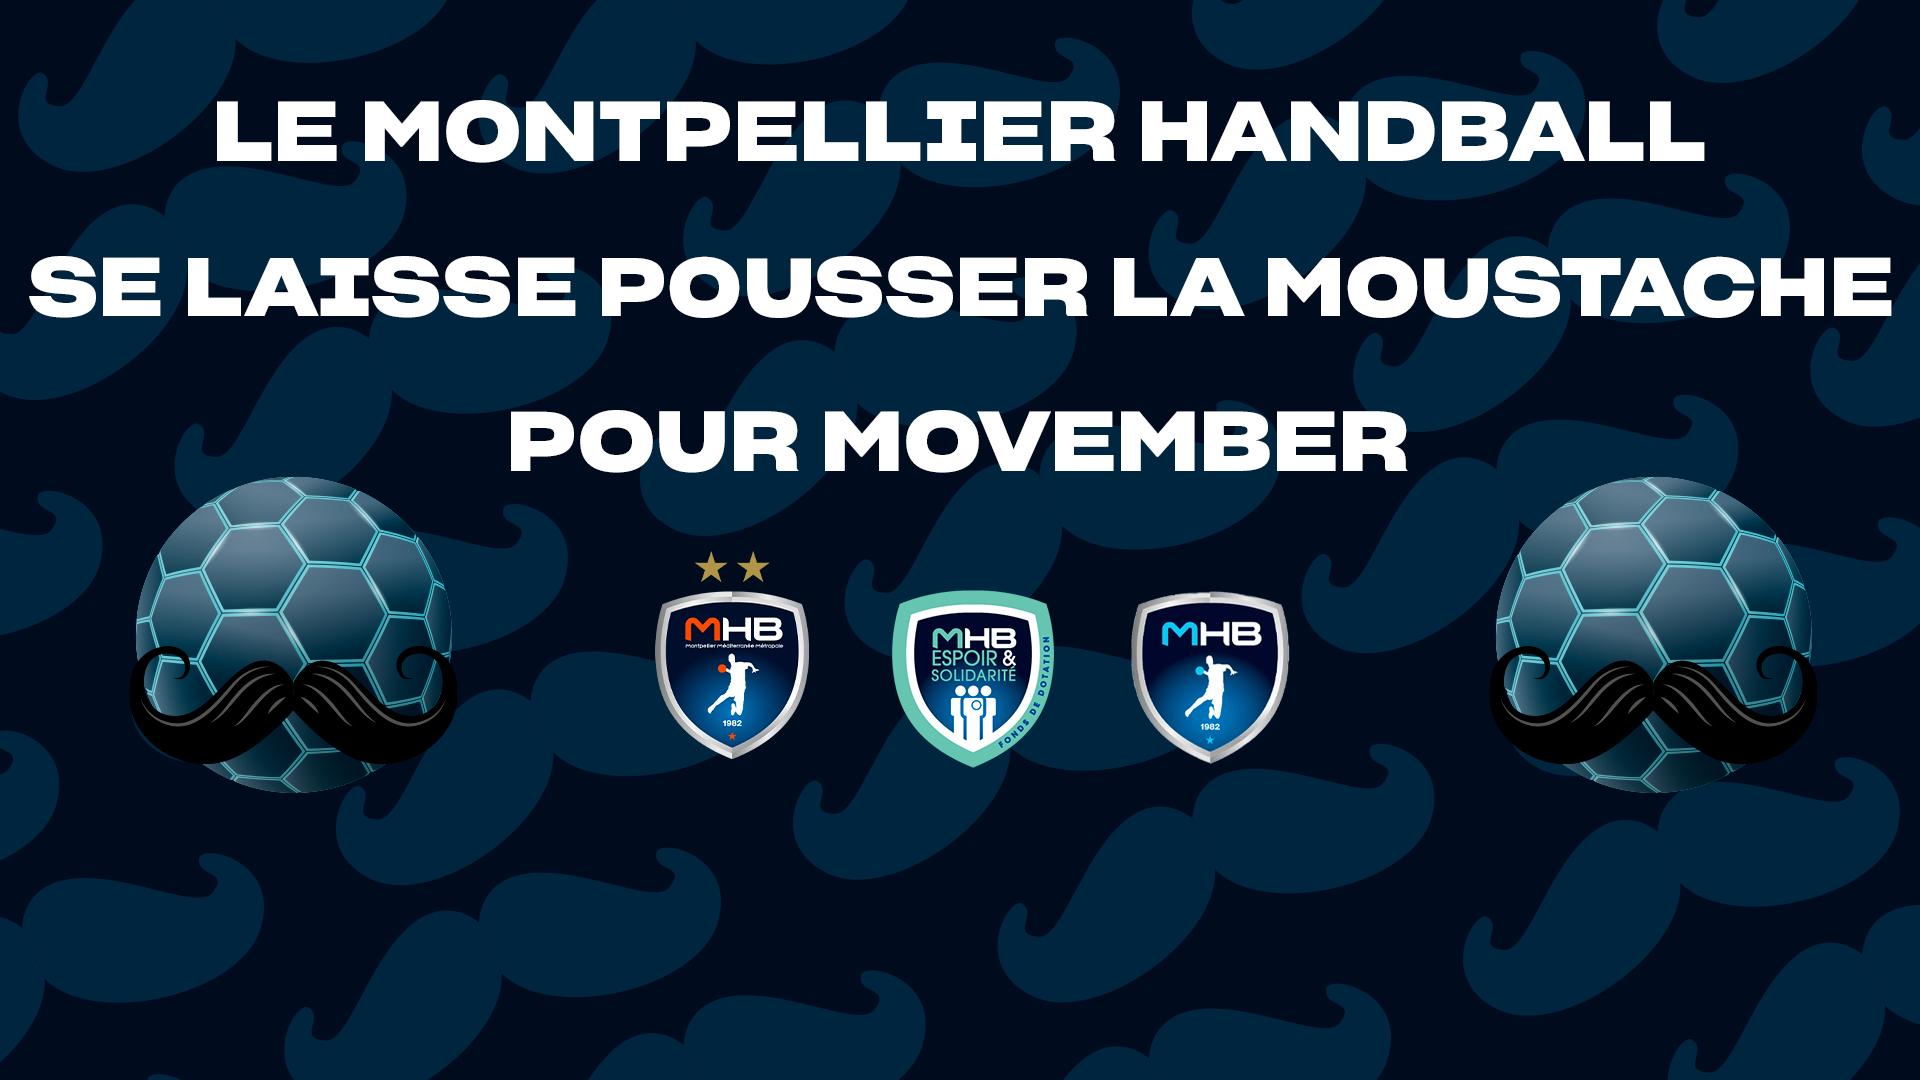 Le Montpellier Handball se laisse pousser la moustache pour Movember